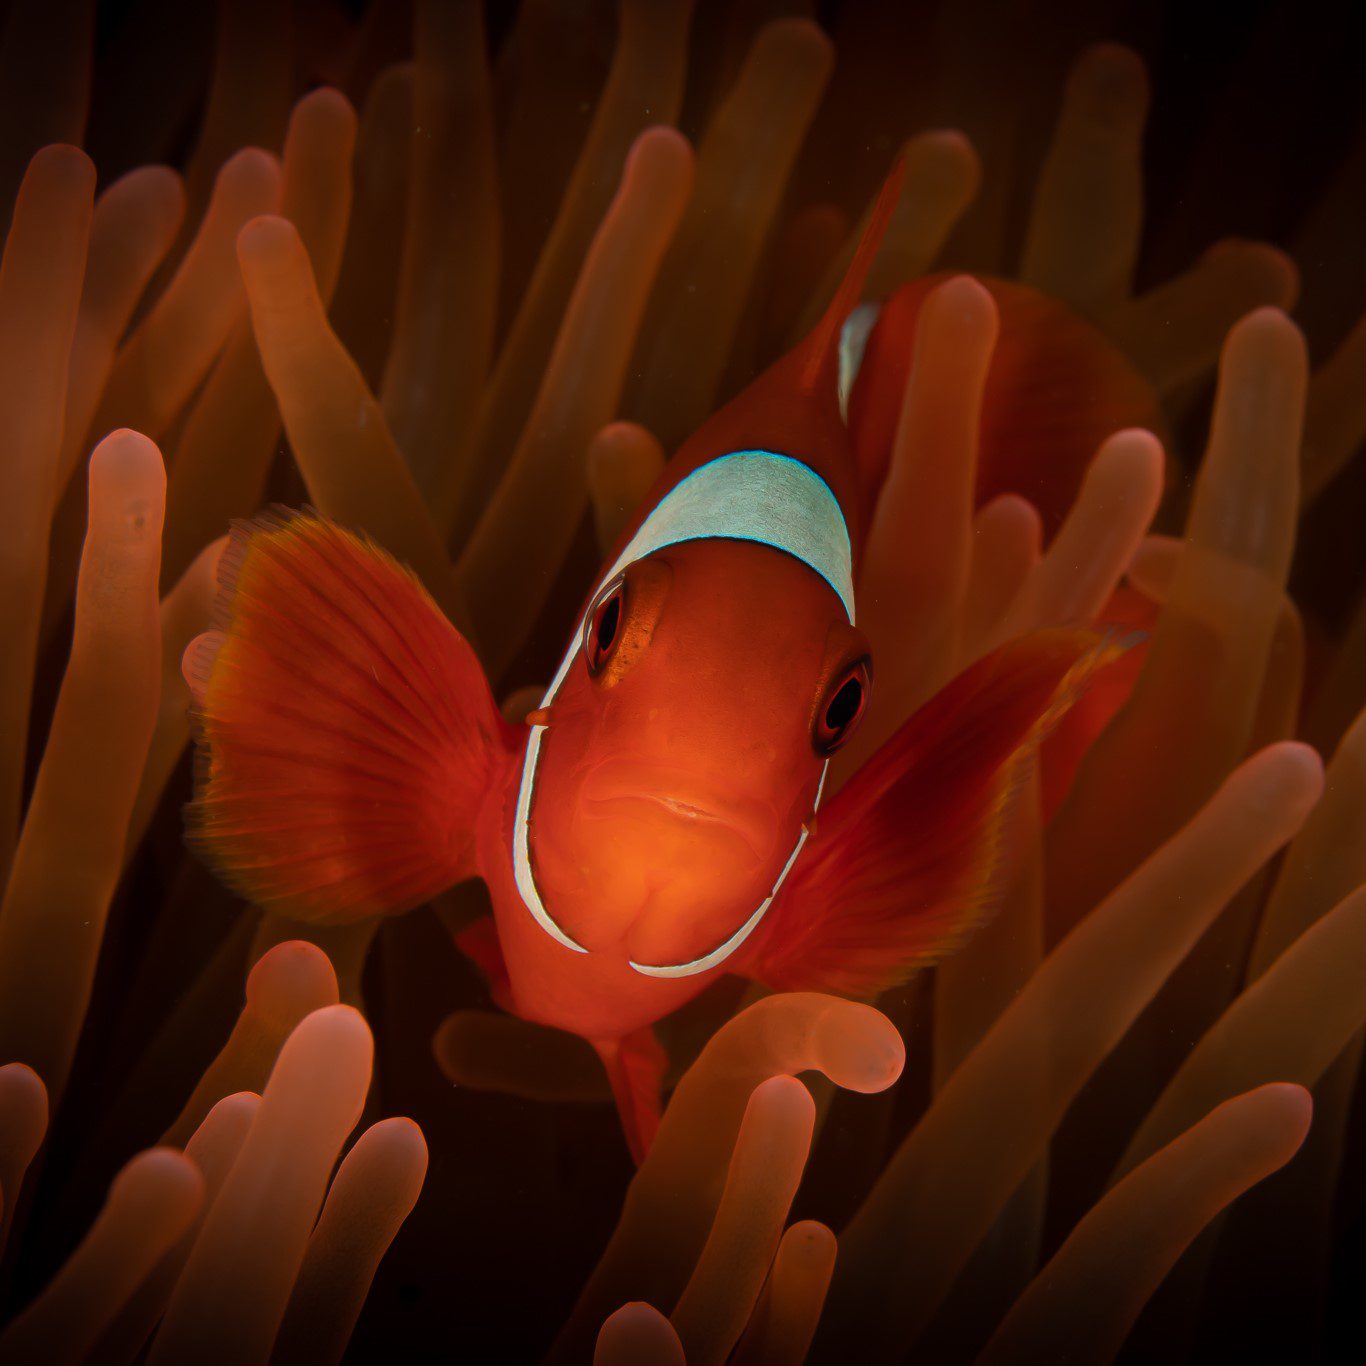 anemone fish bright orange anemone